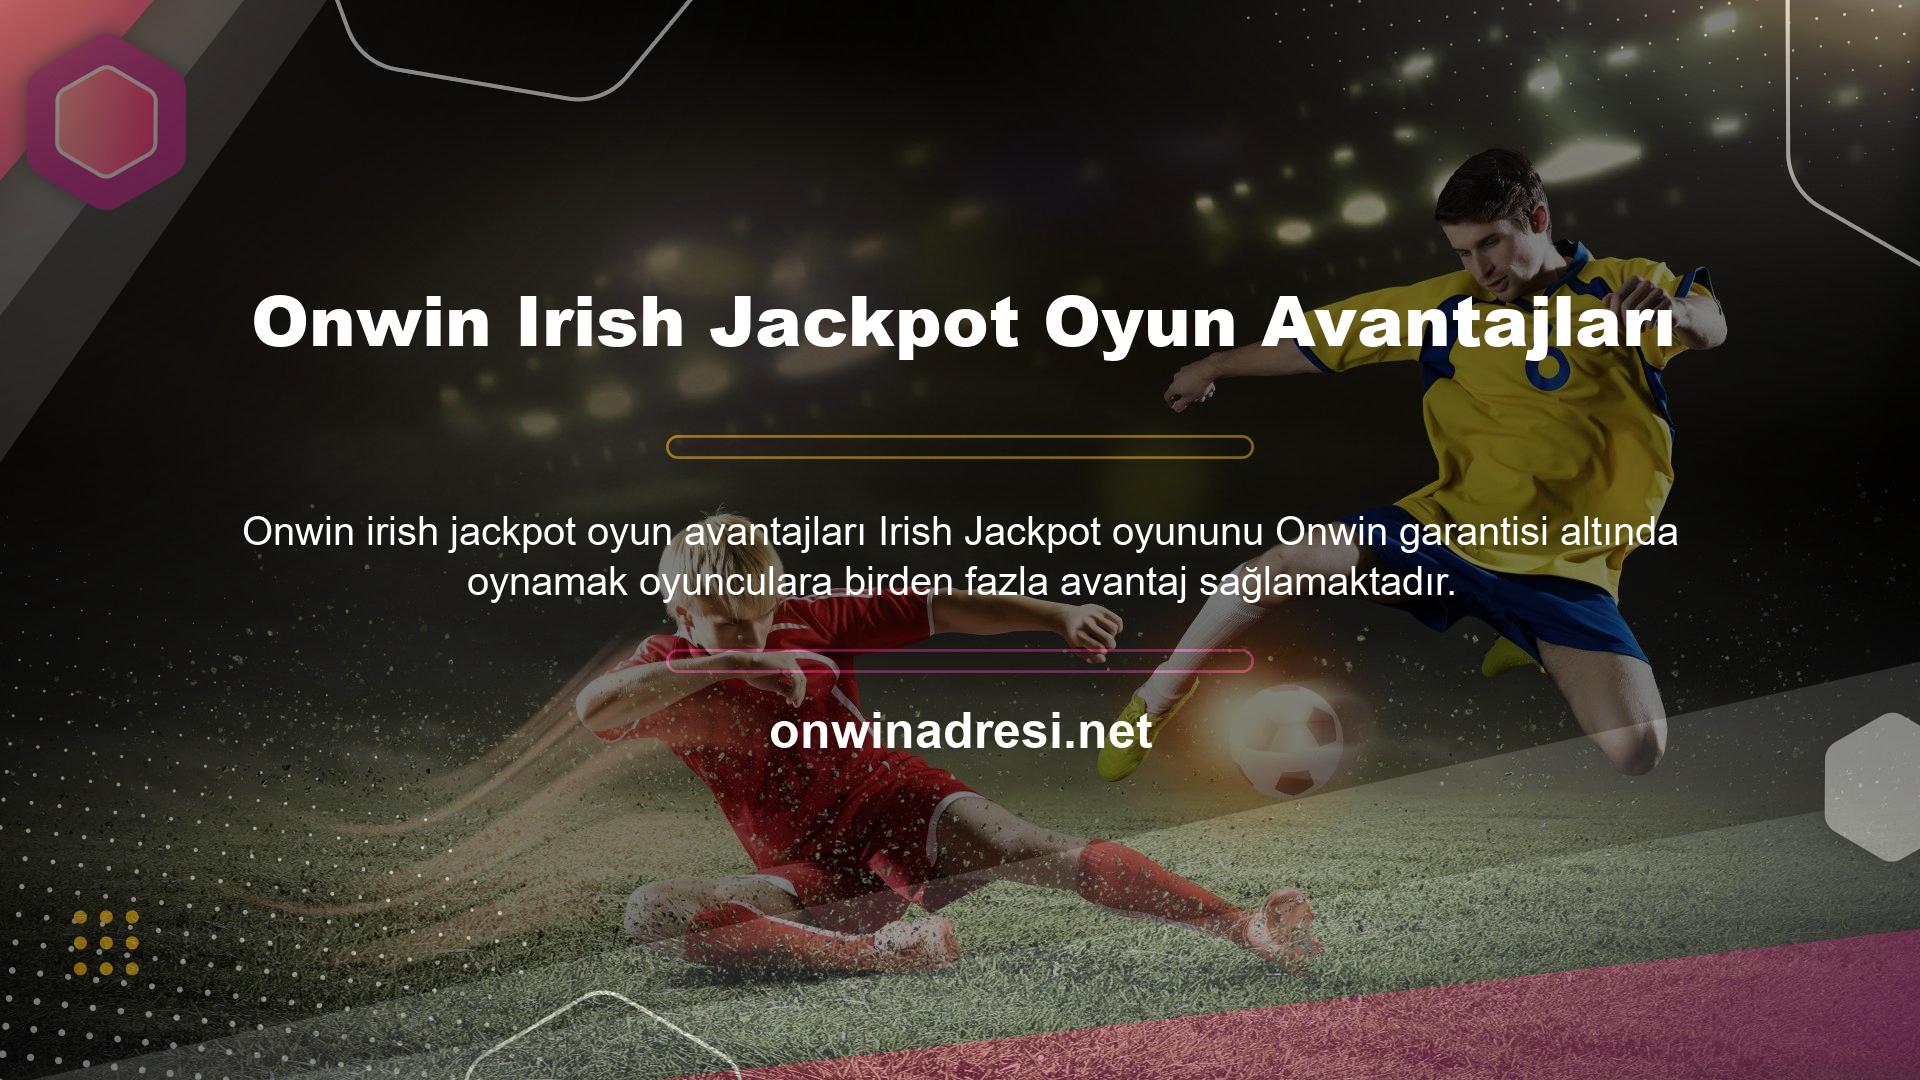 Onwin Irish Jackpot Oyun Avantajları